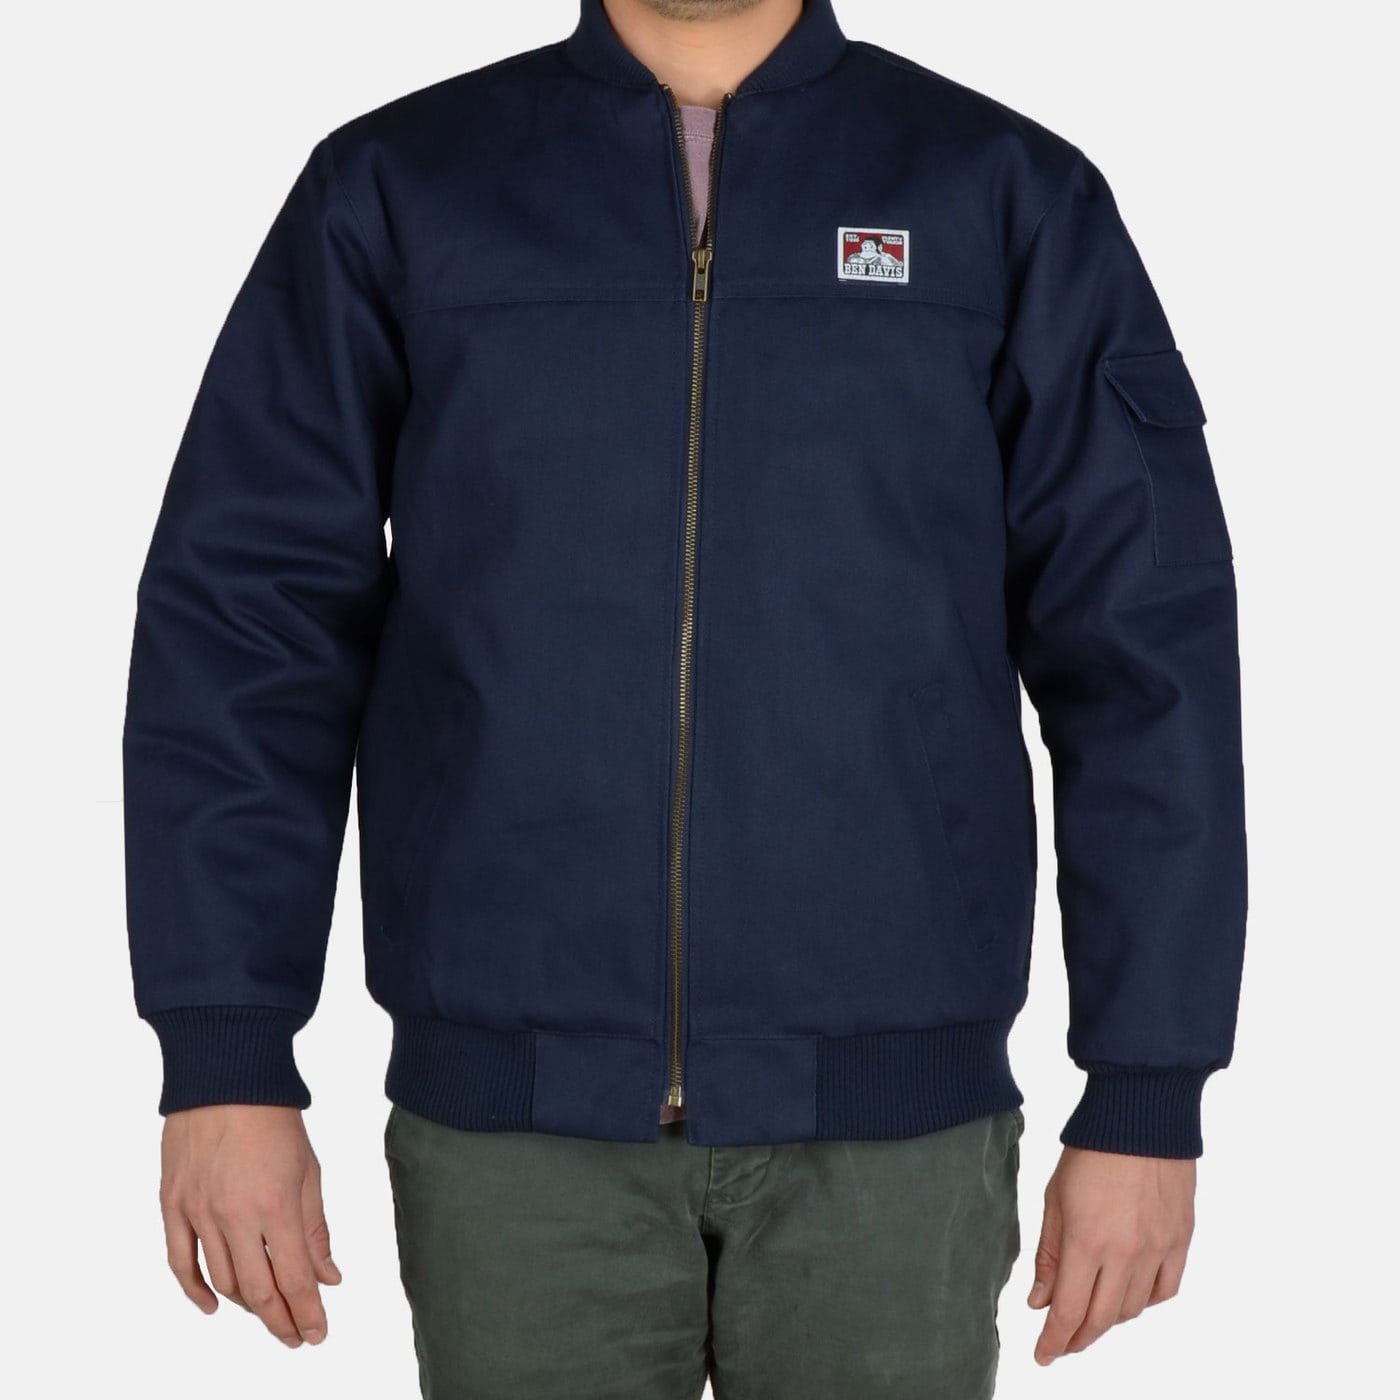 Ben Davis Bomber Jacket – Basics Clothing Store